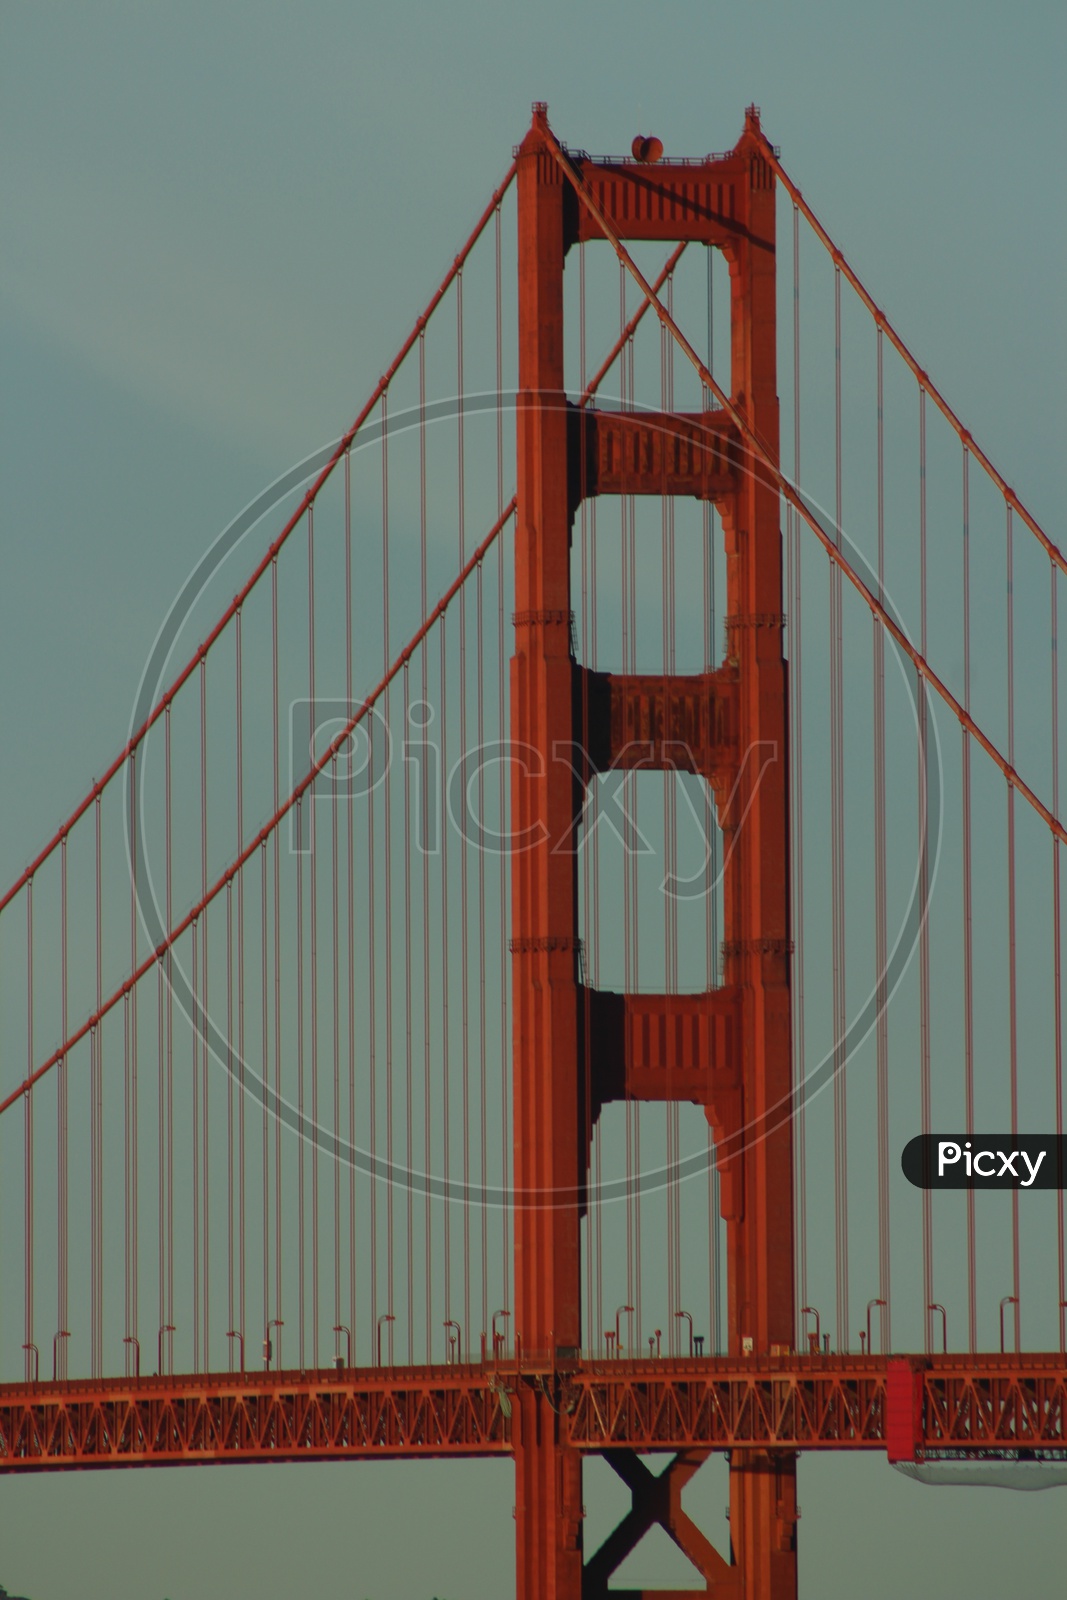 Architecture of the Golden Gate Bridge